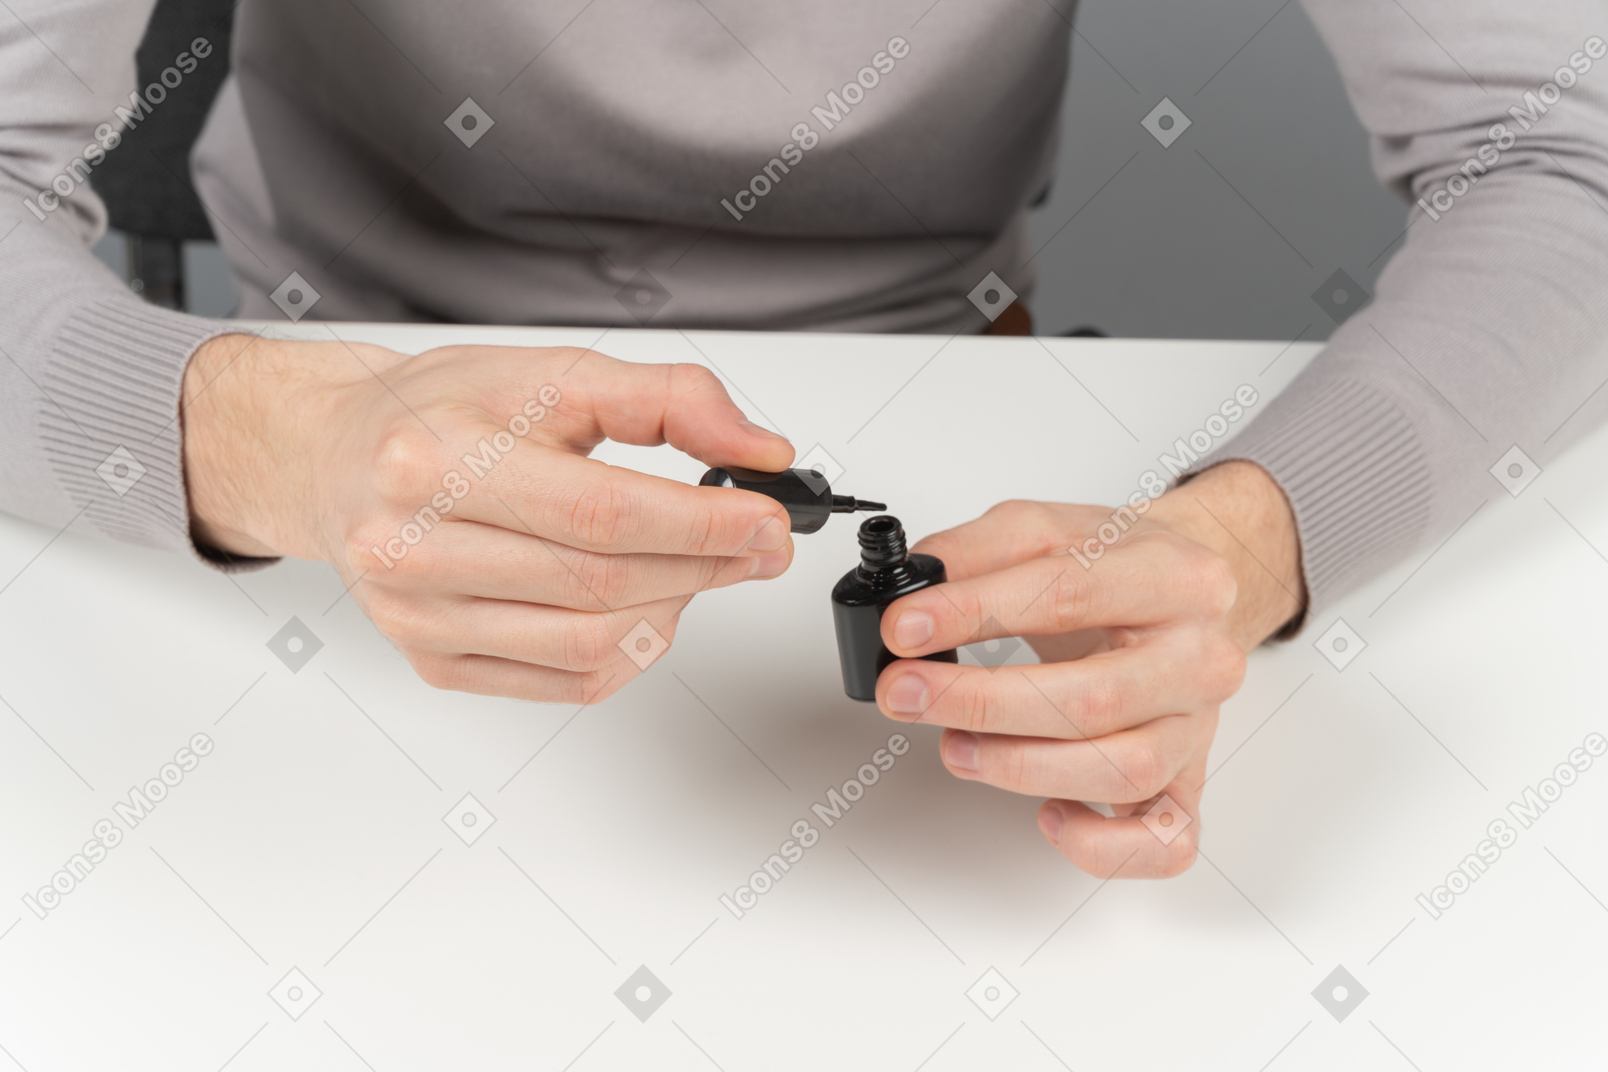 A man opening a black nail polish